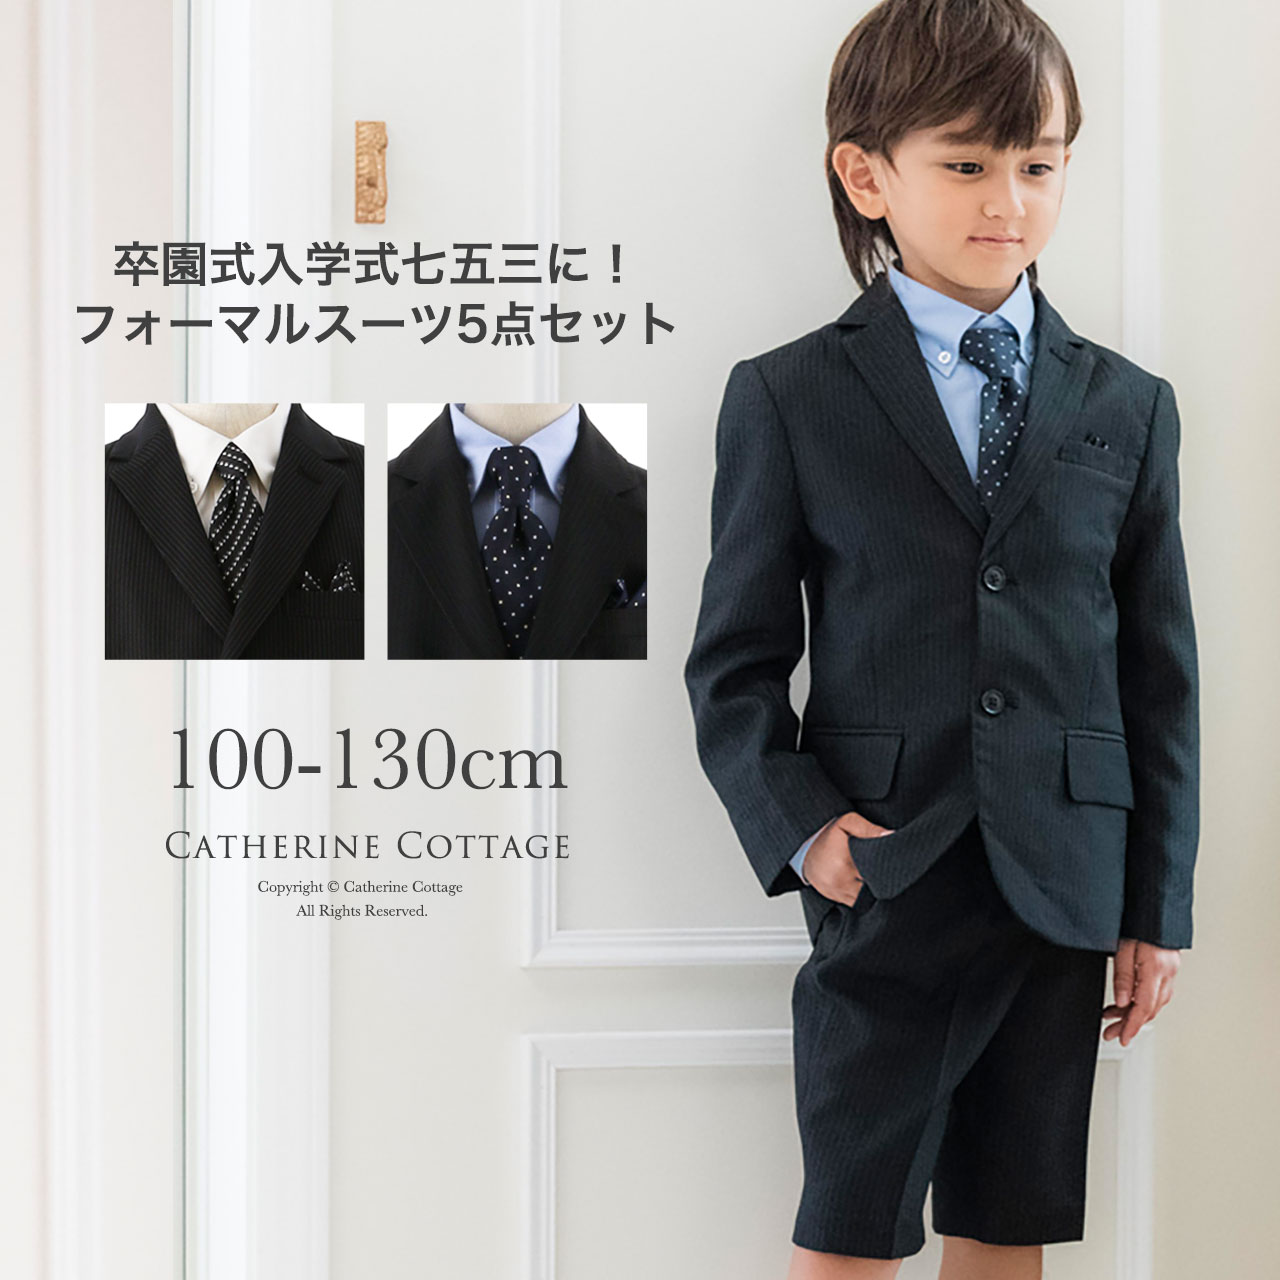 【楽天市場】【大感謝祭セール】【送料無料】 男児 入学式 スーツ 